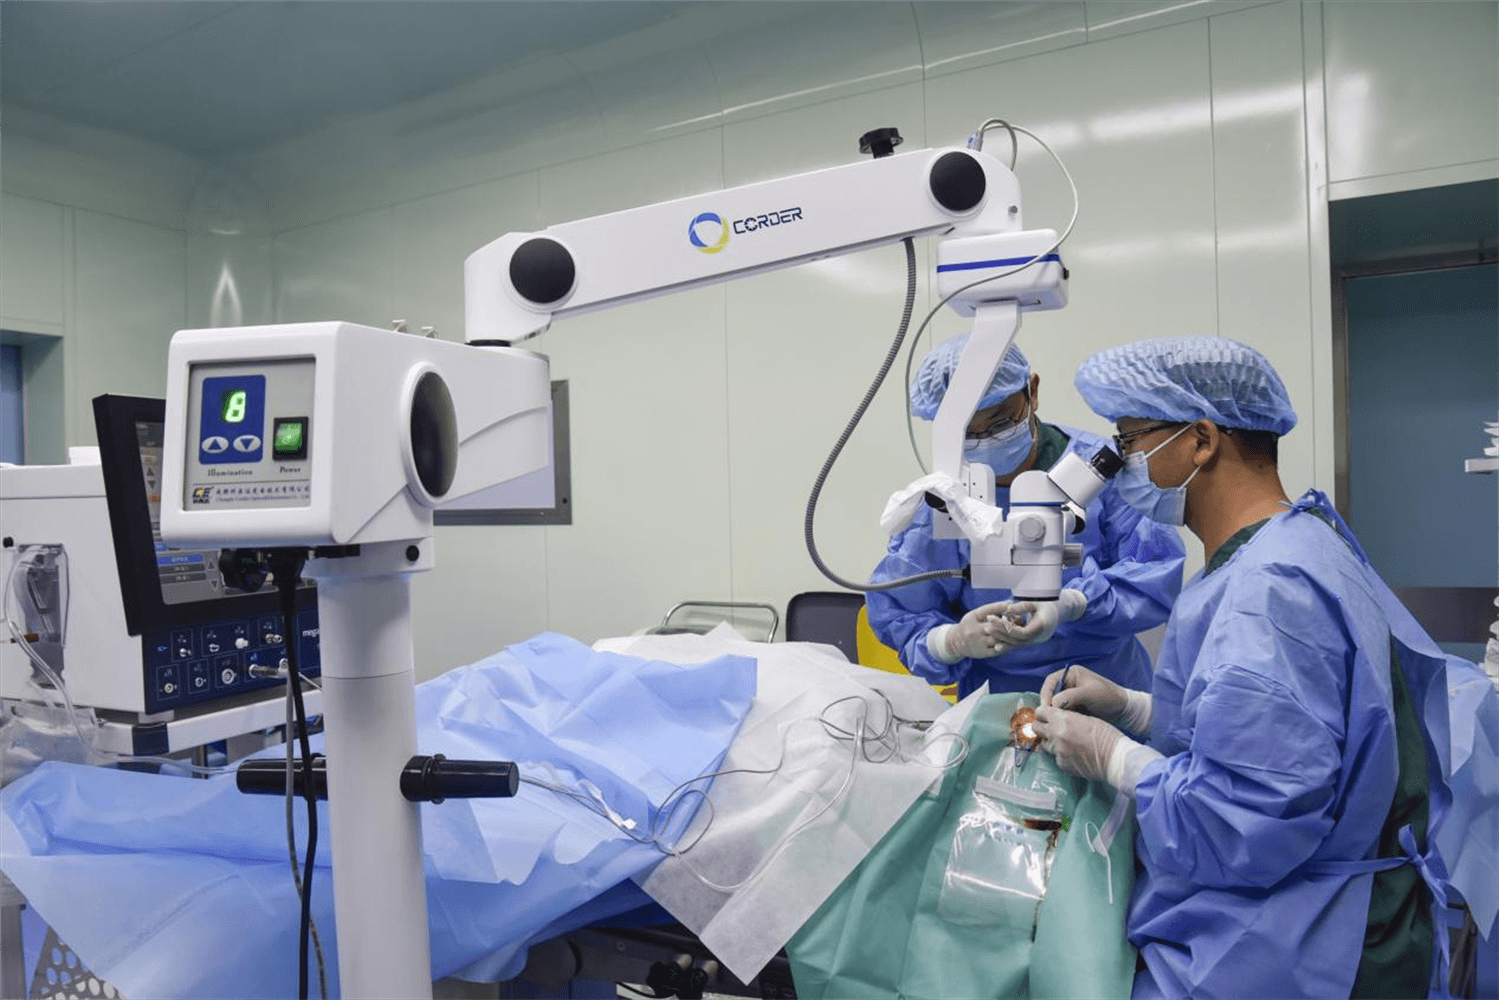 Operationsmikroskope: Verbesserung der Präzision chirurgischer Eingriffe